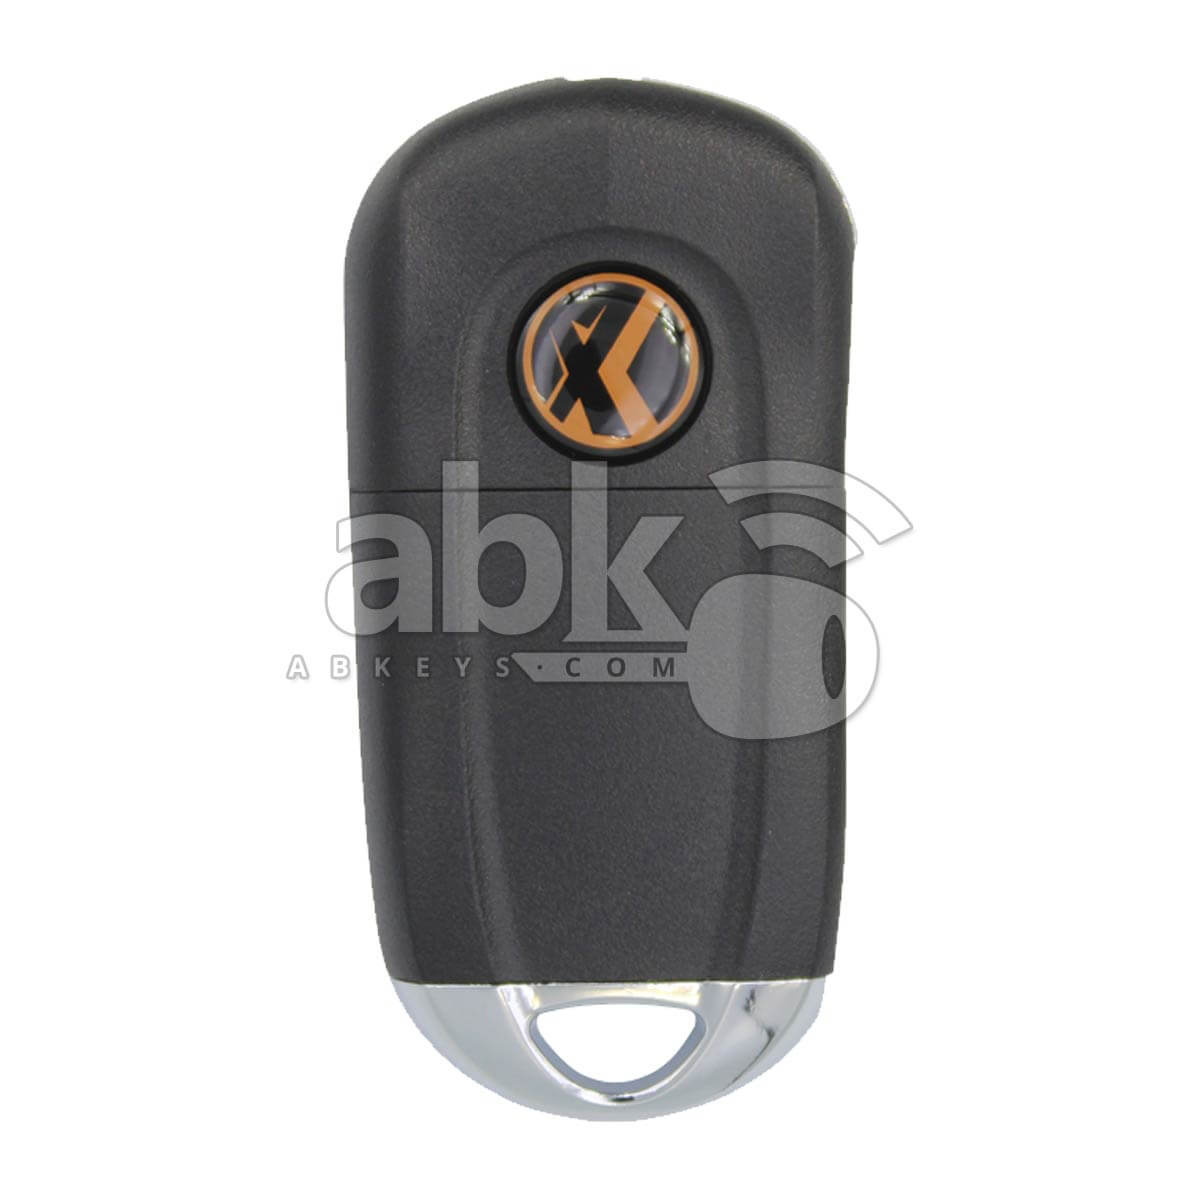 Xhorse VVDI Key Tool VVDI2 Buick Style Wired Flip Remote 3Buttons XKBU03EN - ABK-1015-XKBU03EN - 